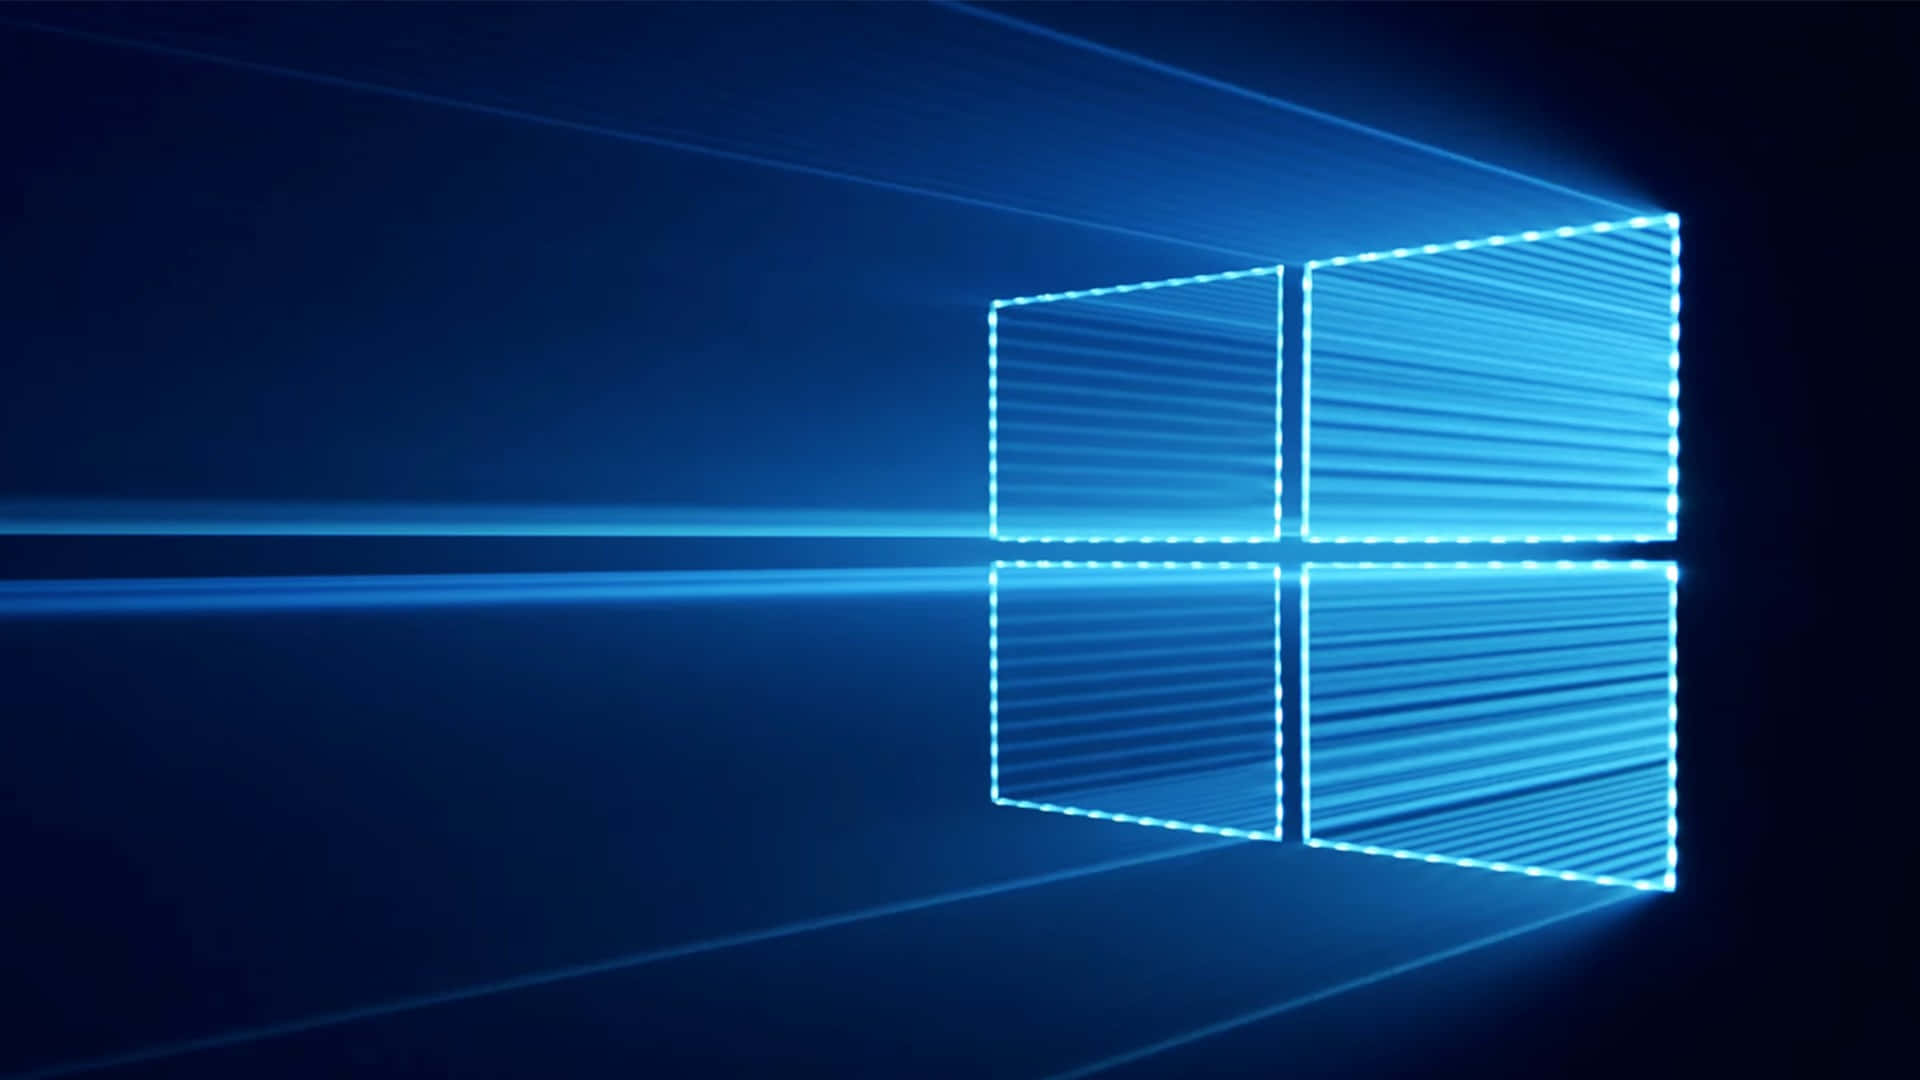 Holensie Das Beste Aus Windows 10 Heraus